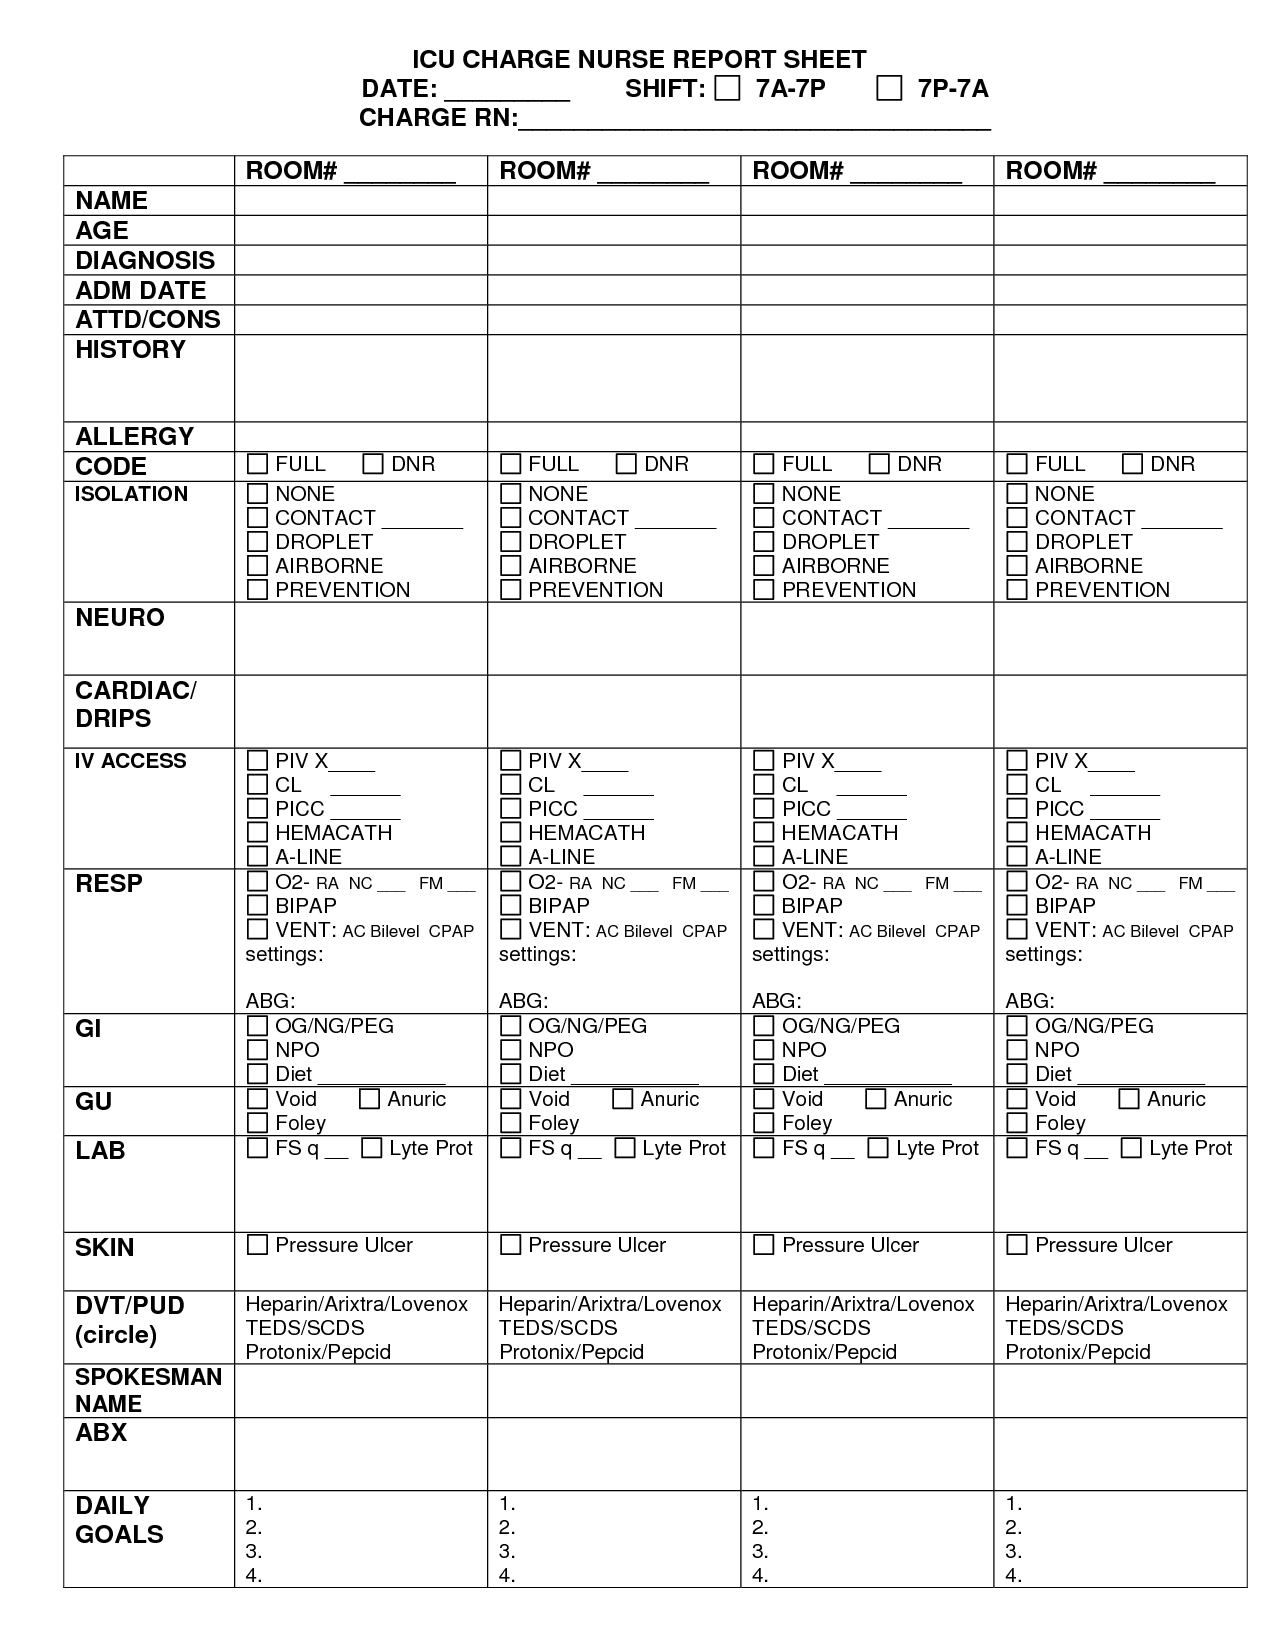 Charge Nurse Report Sheet Sample | Nursing Documents | Nurse Regarding Charge Nurse Report Sheet Template